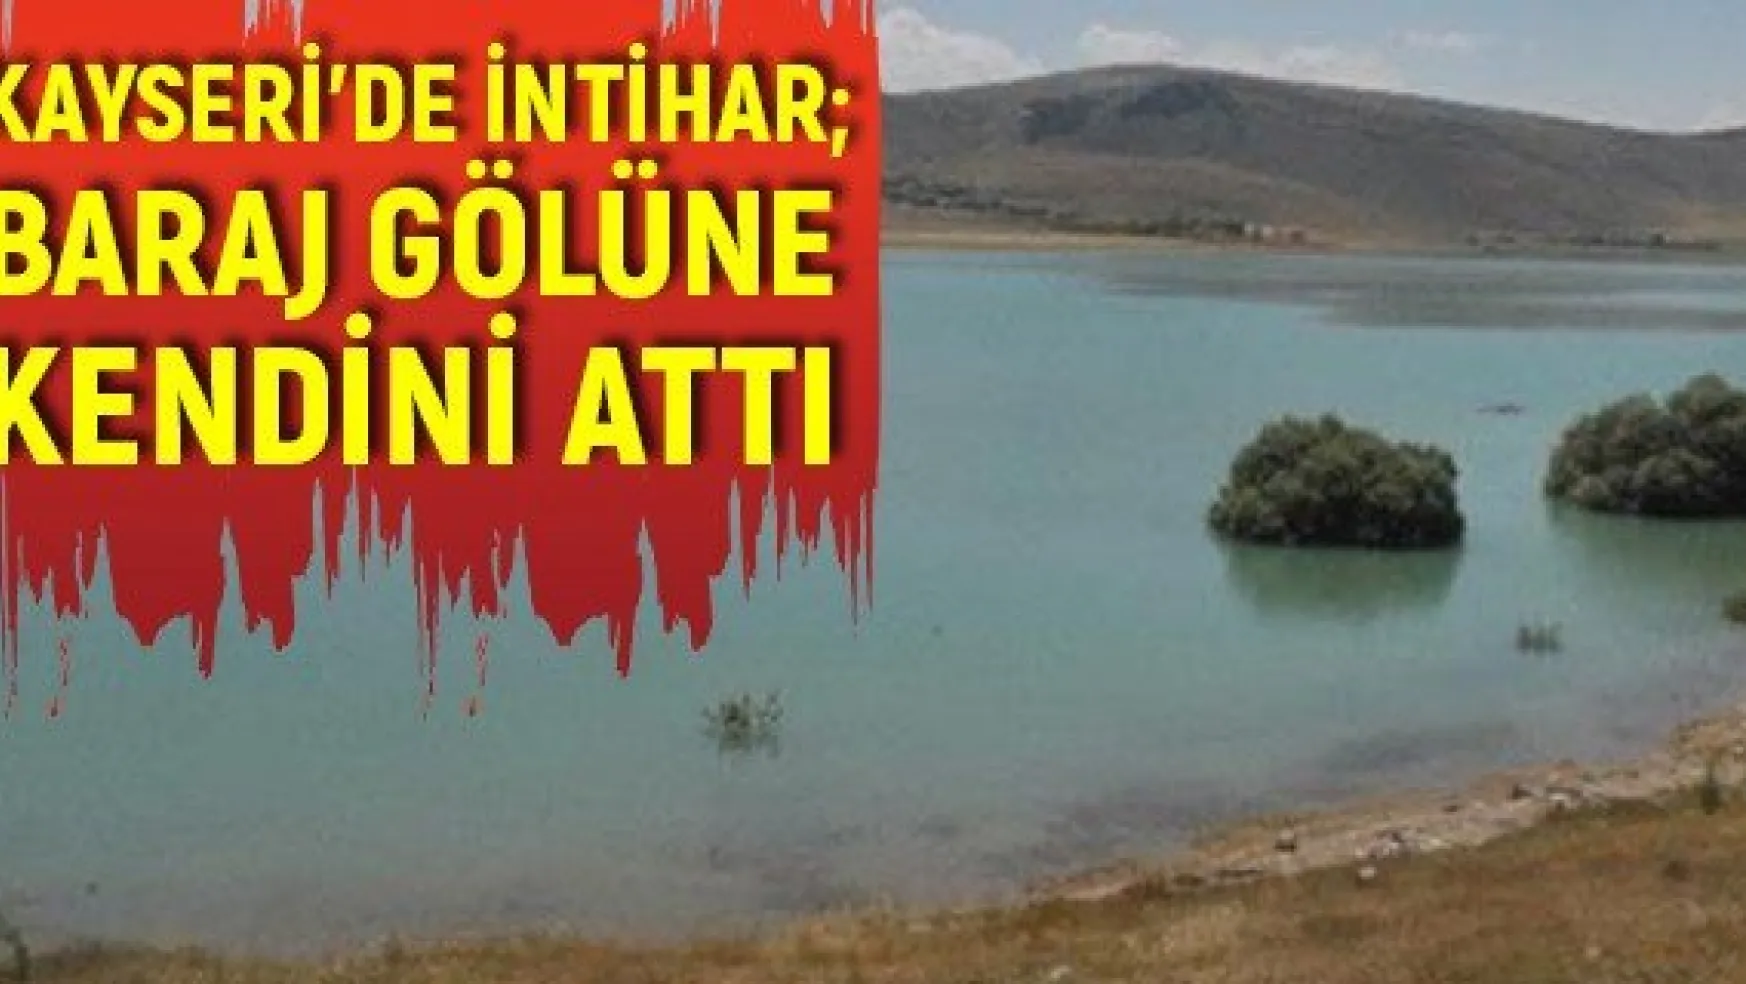 Kayseri'de intihar baraj gölüne kendini attı